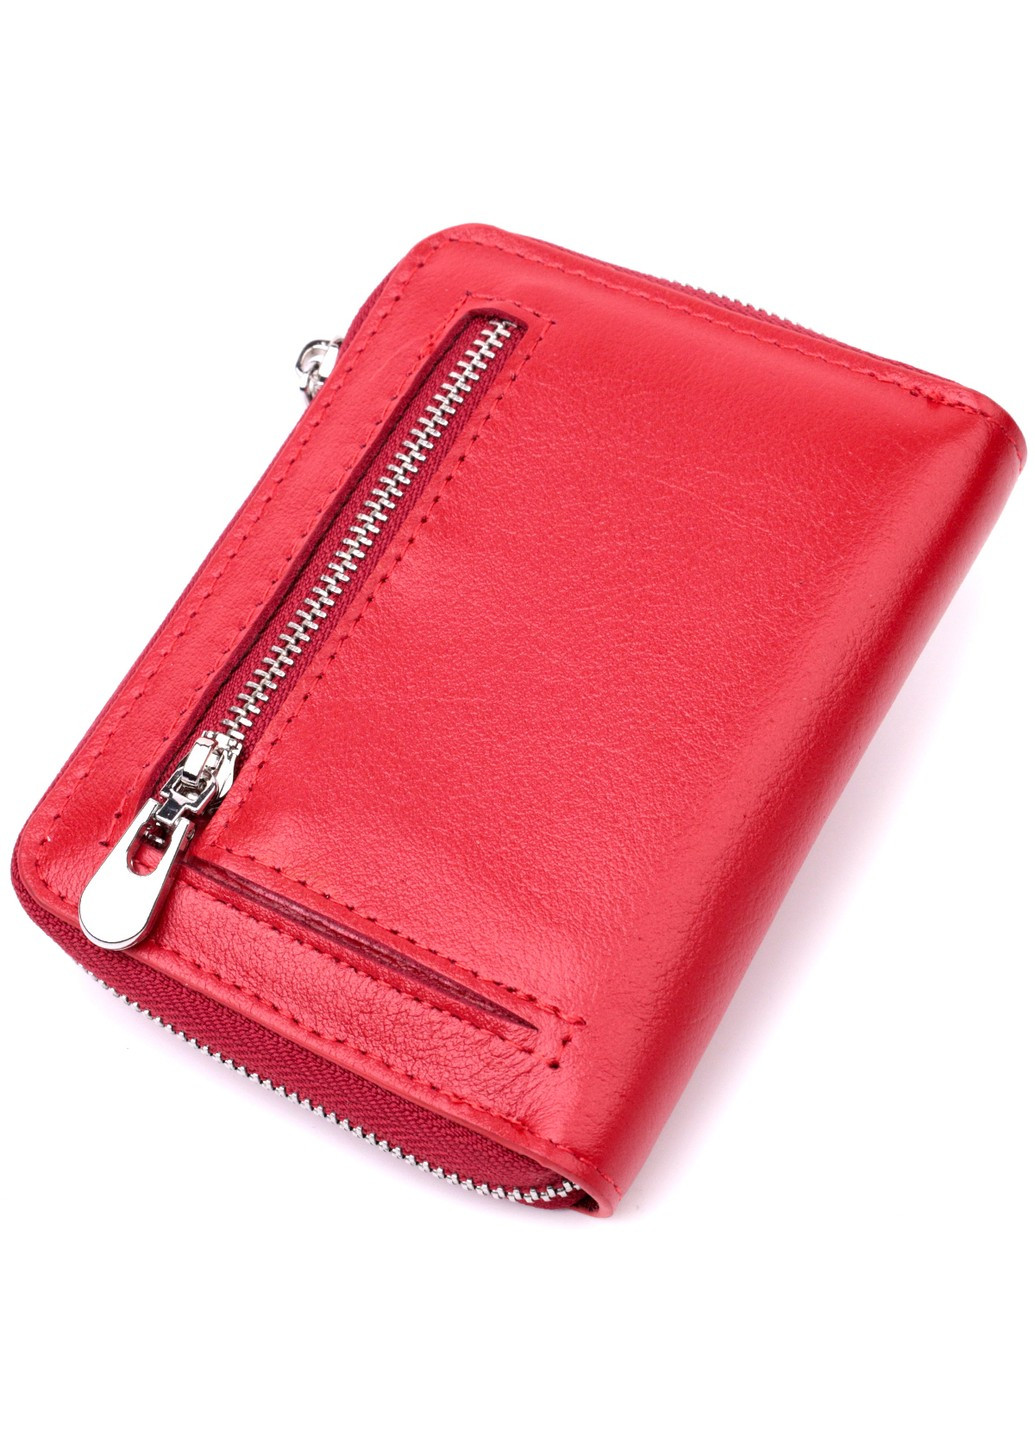 Стильный кожаный кошелек для женщин на молнии с тисненым логотипом производителя 19490 Красный st leather (277980491)